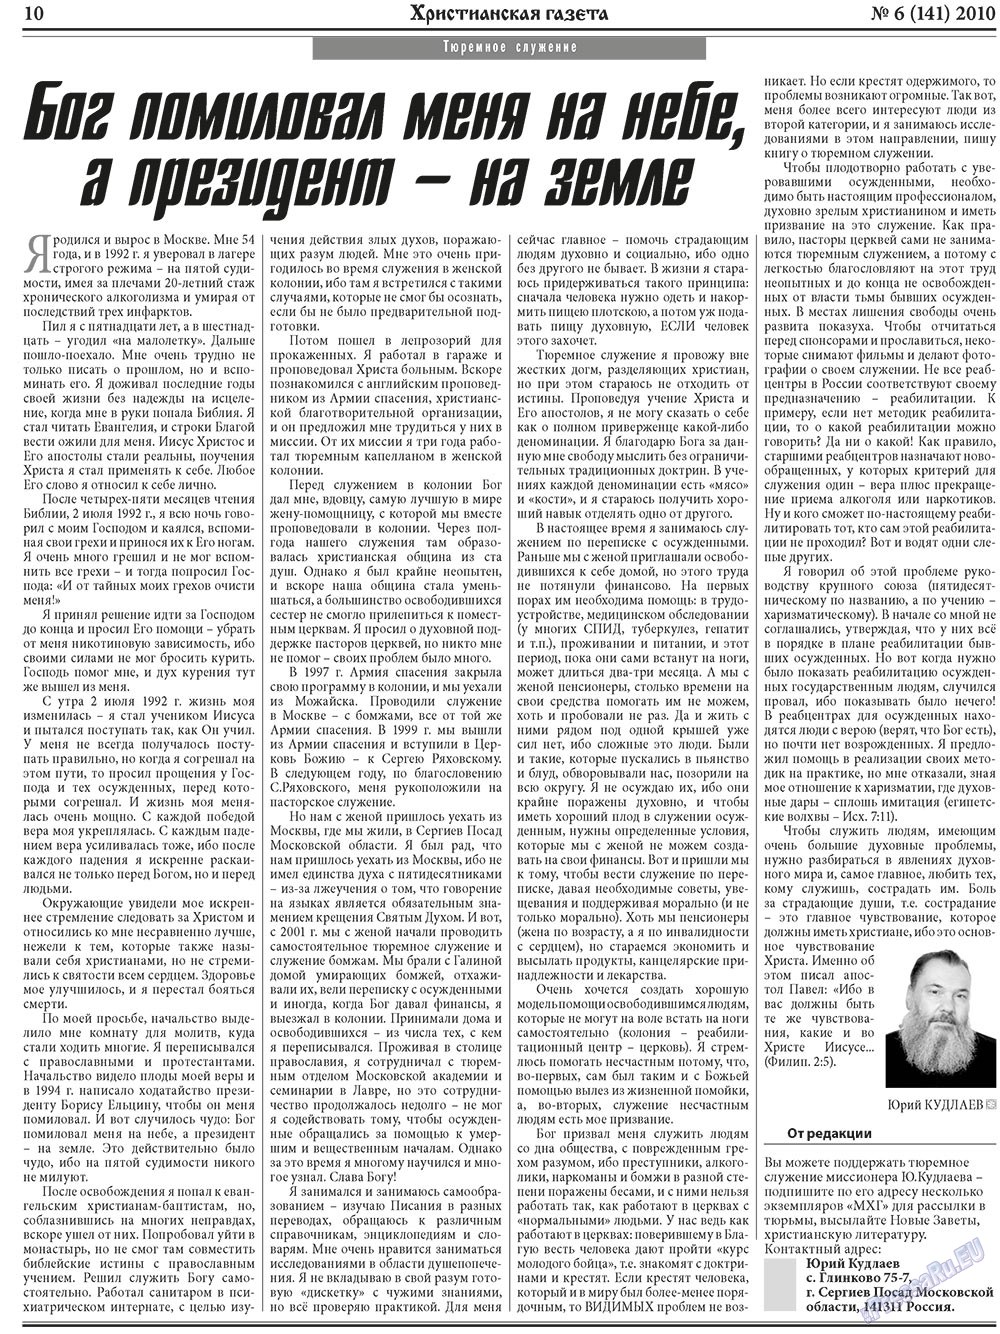 Христианская газета, газета. 2010 №6 стр.10